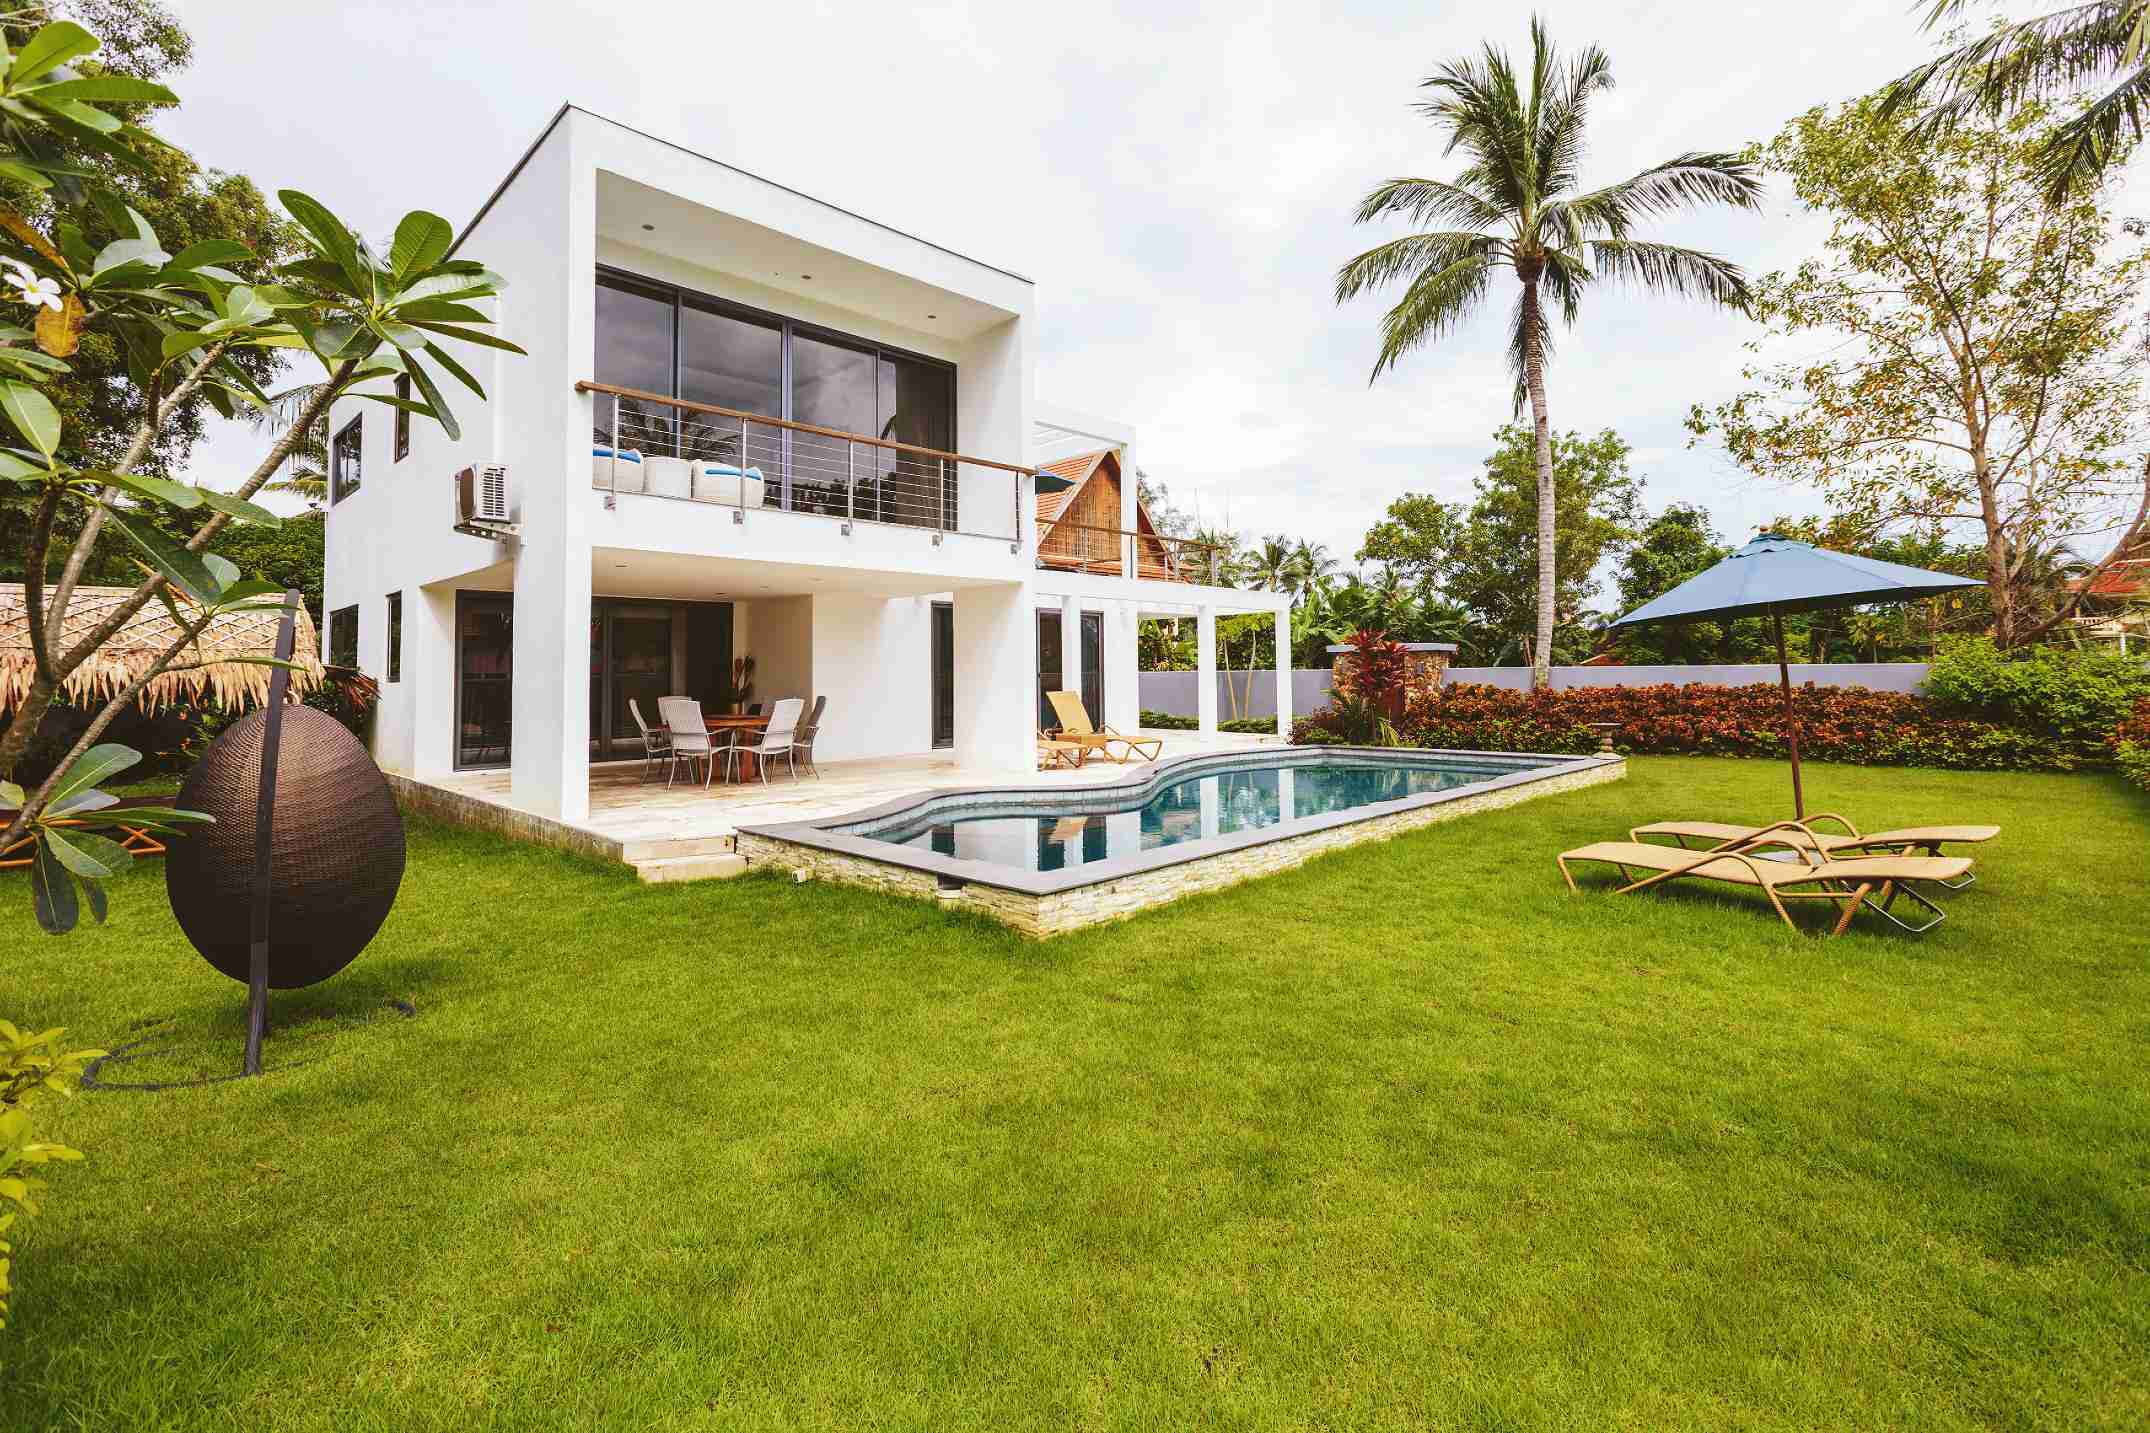 Une belle maison avec son jardin sa piscine une terrasse sur pilotis